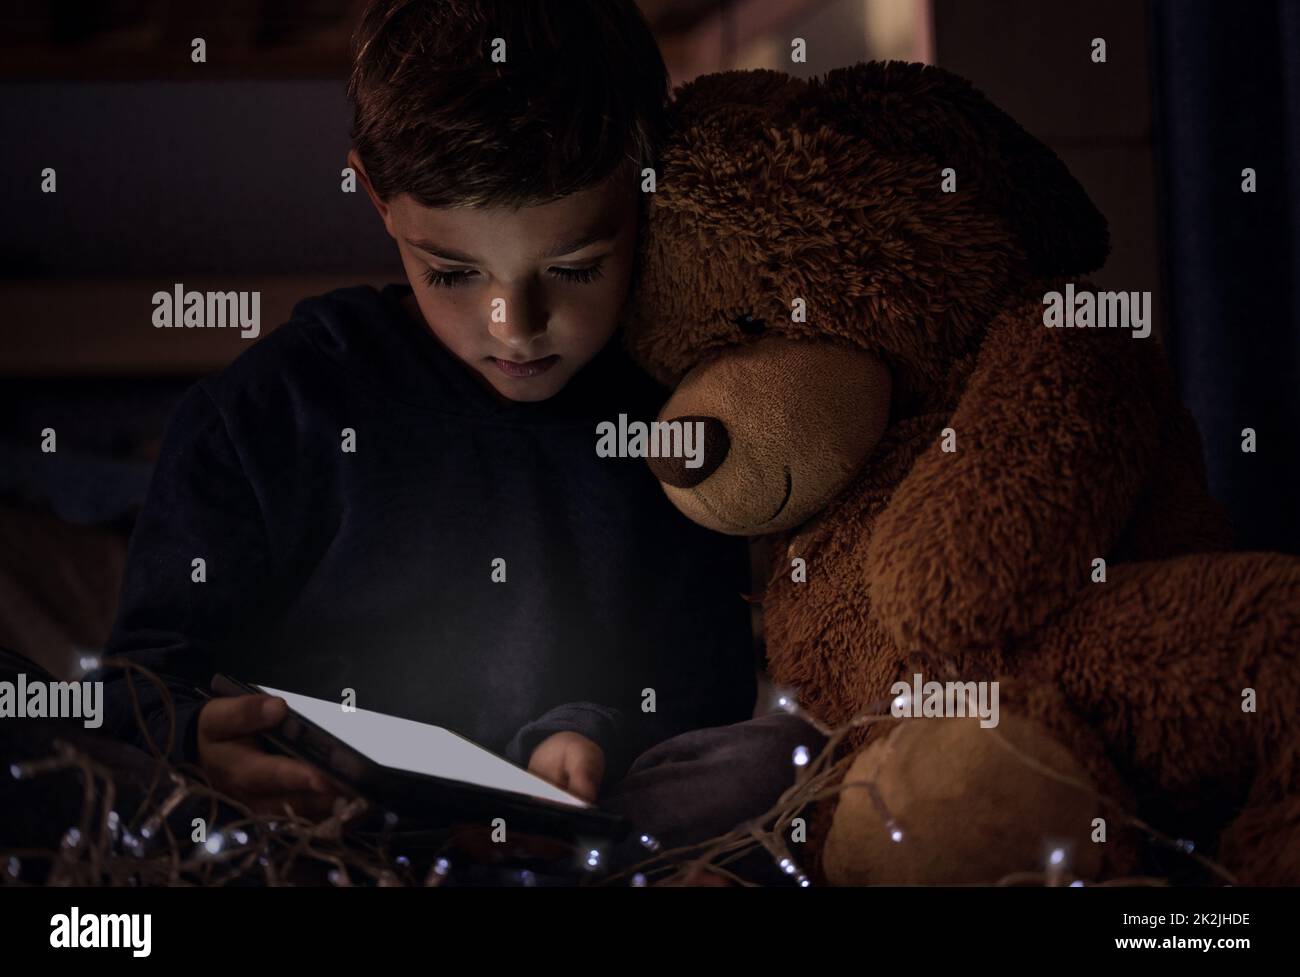 Das Königreich gehört kleinen Kindern. Aufnahme eines entzückenden kleinen Jungen, der nachts in seinem Schlafzimmer ein digitales Tablet mit seinem Teddybären benutzt. Stockfoto